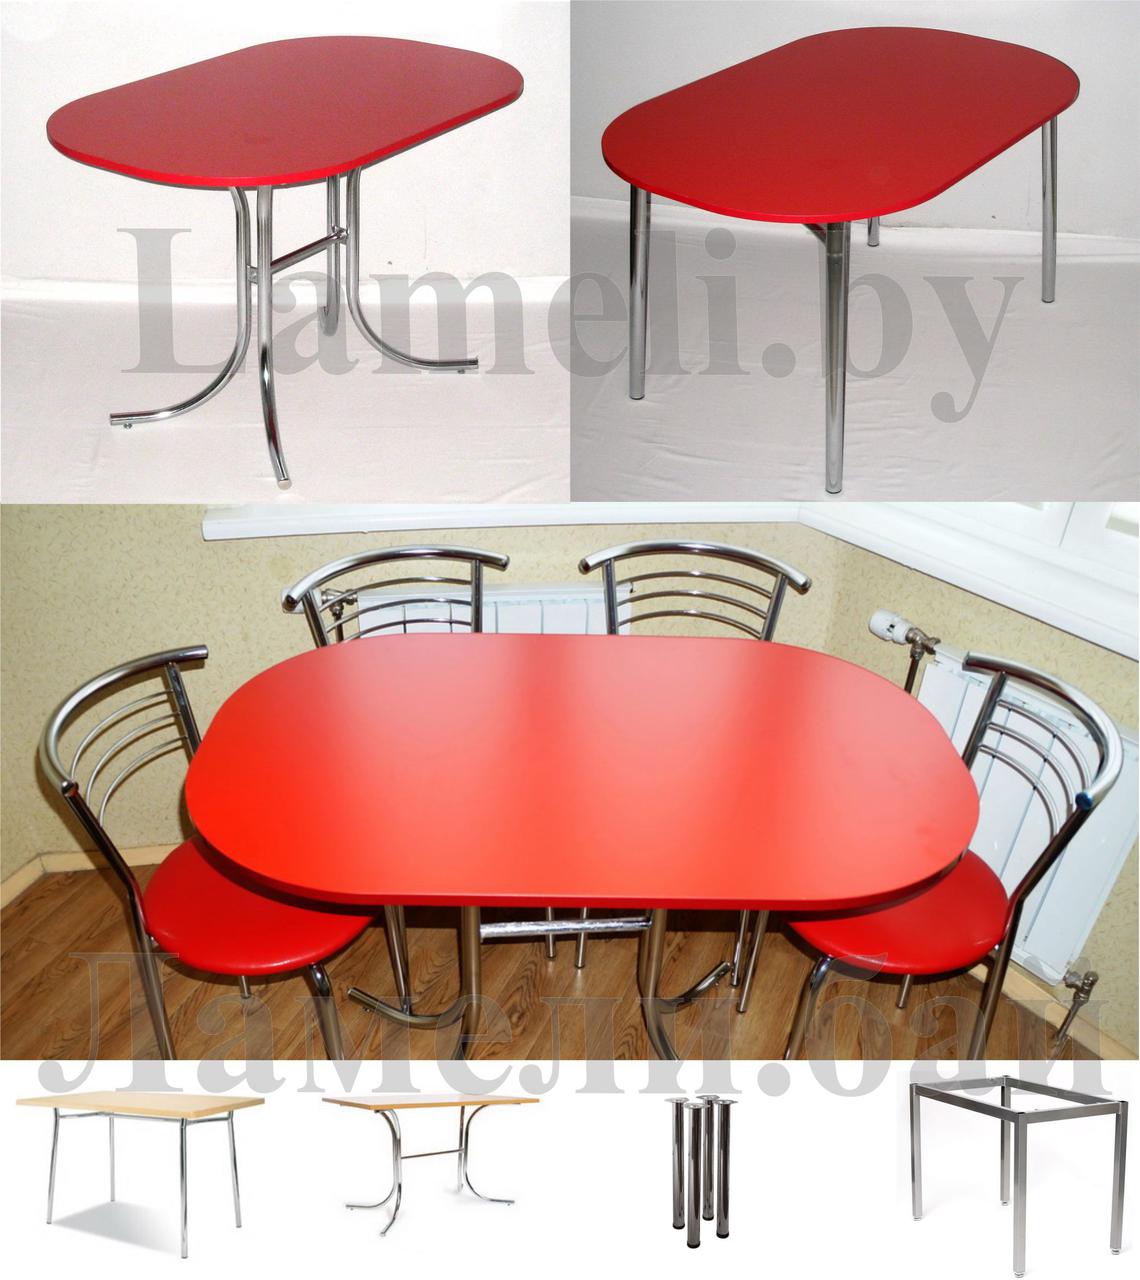 Стол кухонный обеденный овальный цвета Красный на 4 видах ног. Любые размеры! Доставка по Беларуси